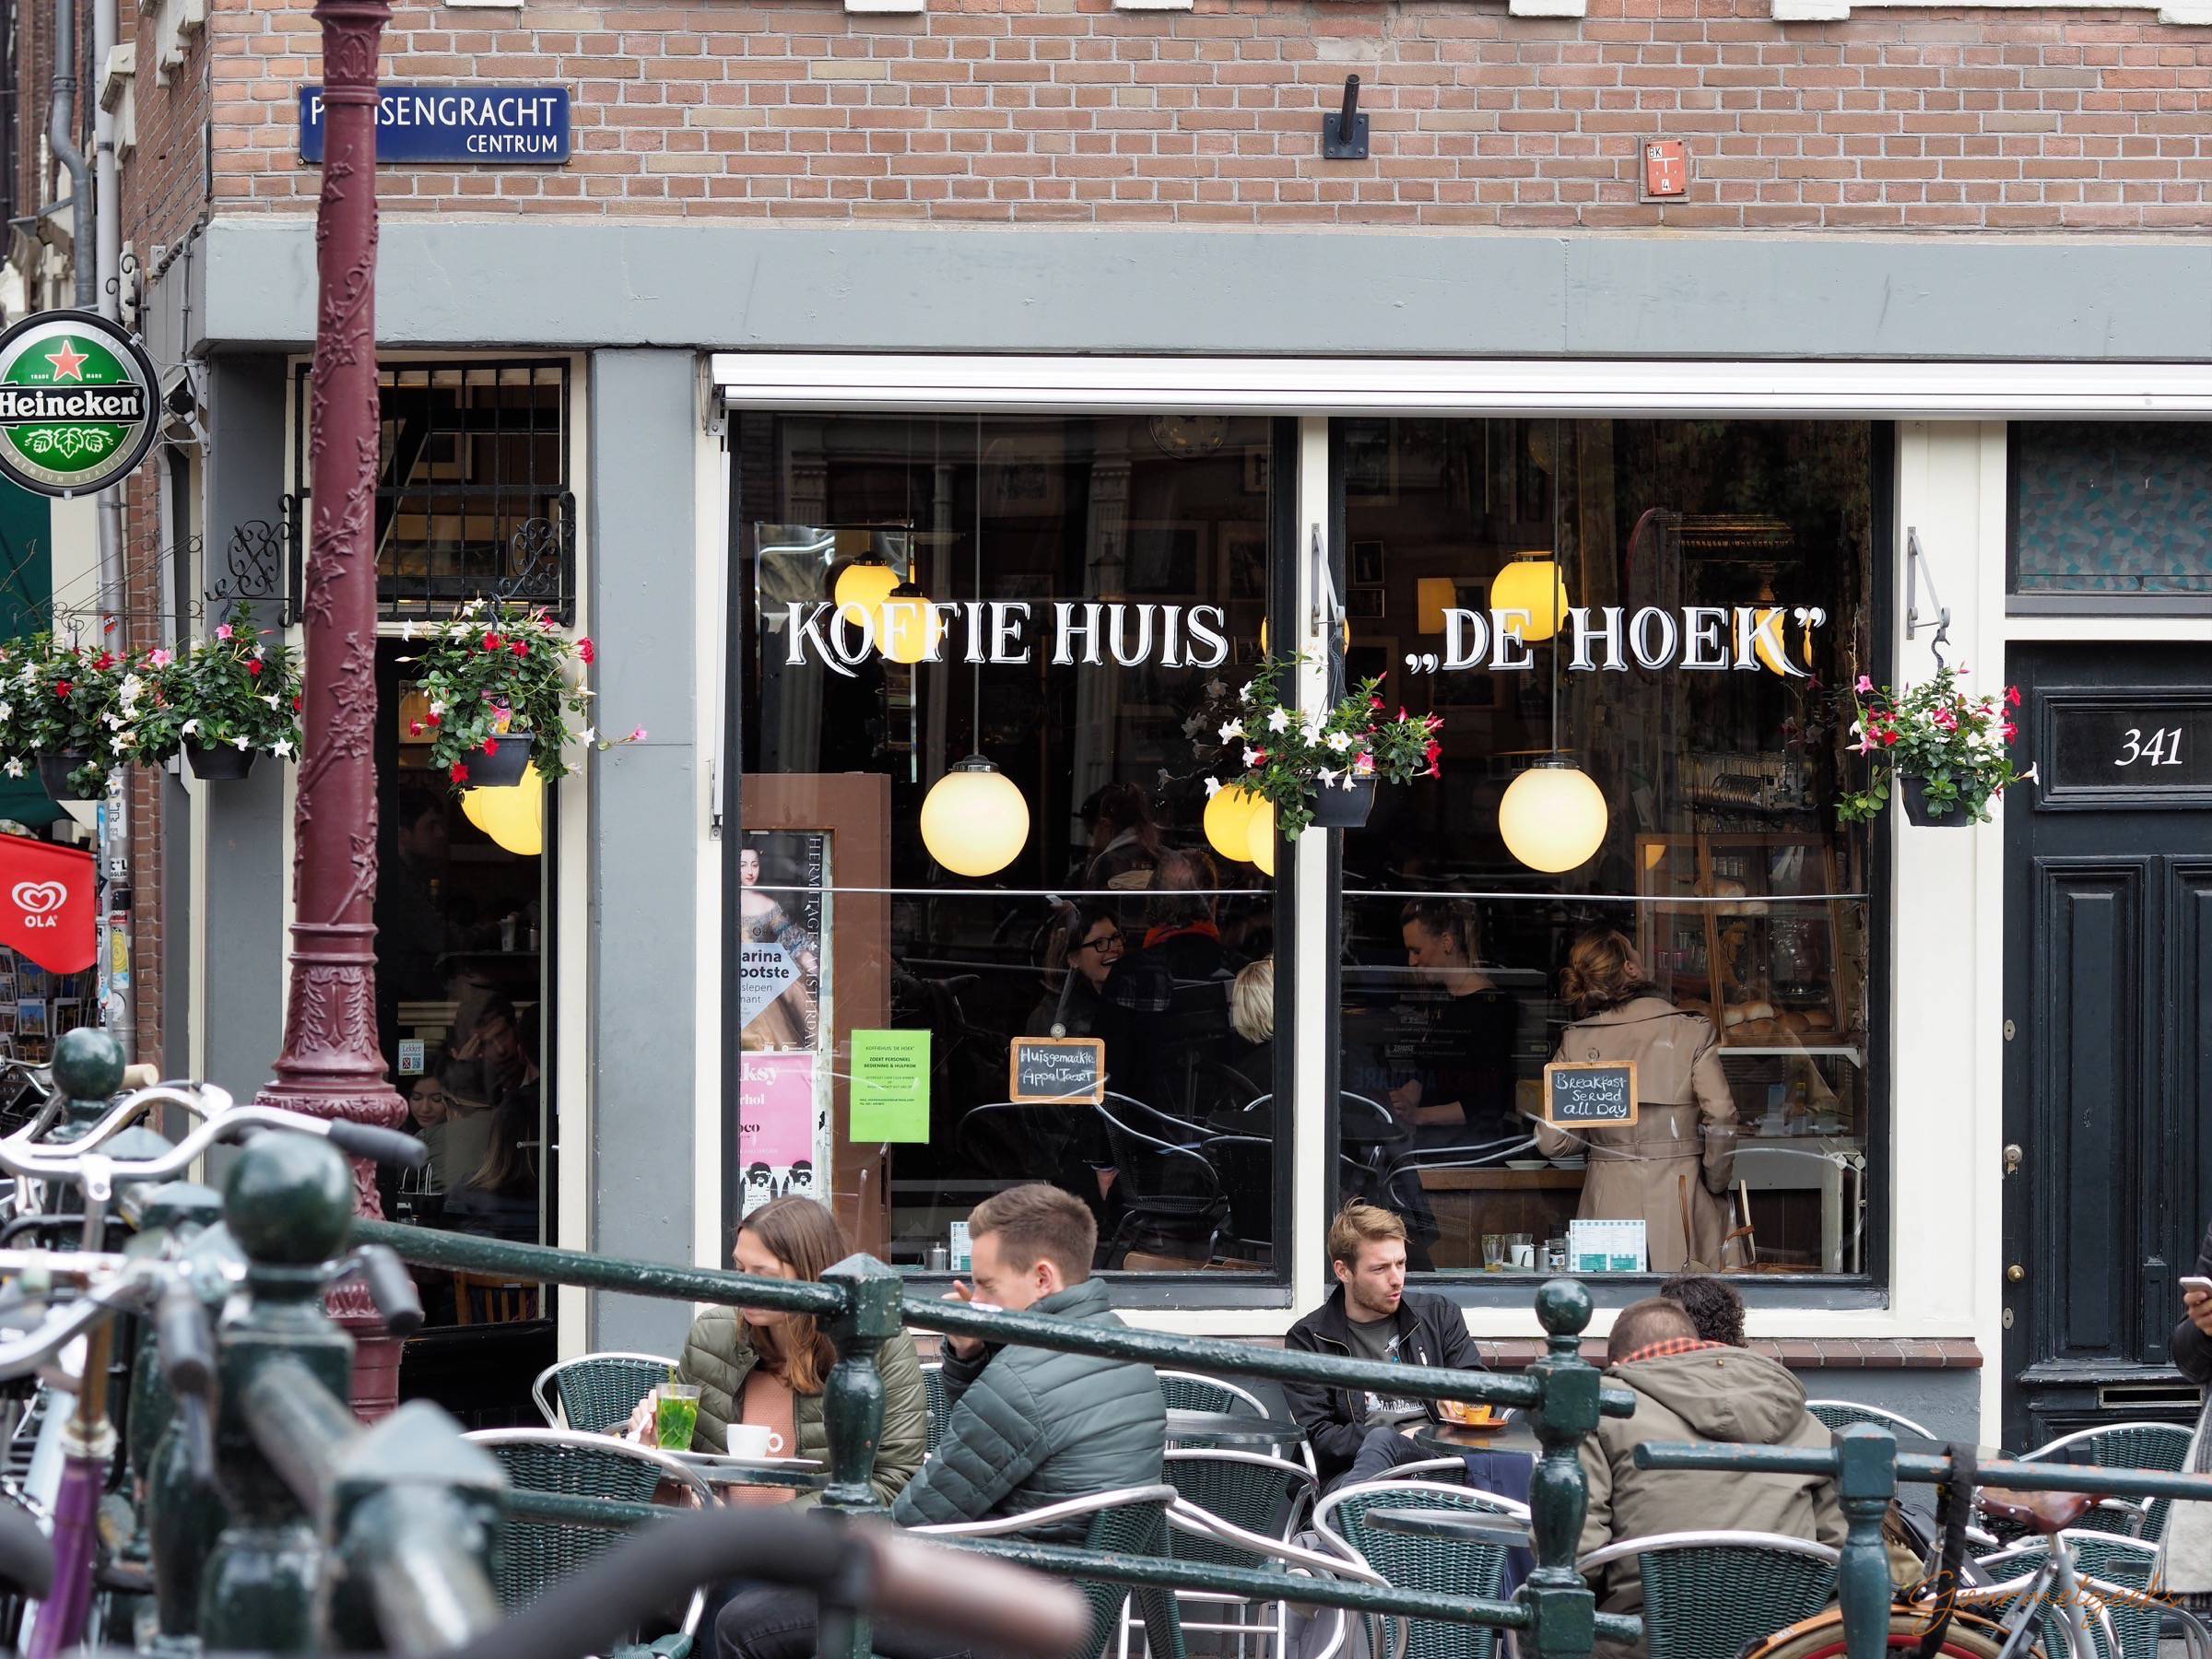 Das de Hoek - ein klassisches bruine Café